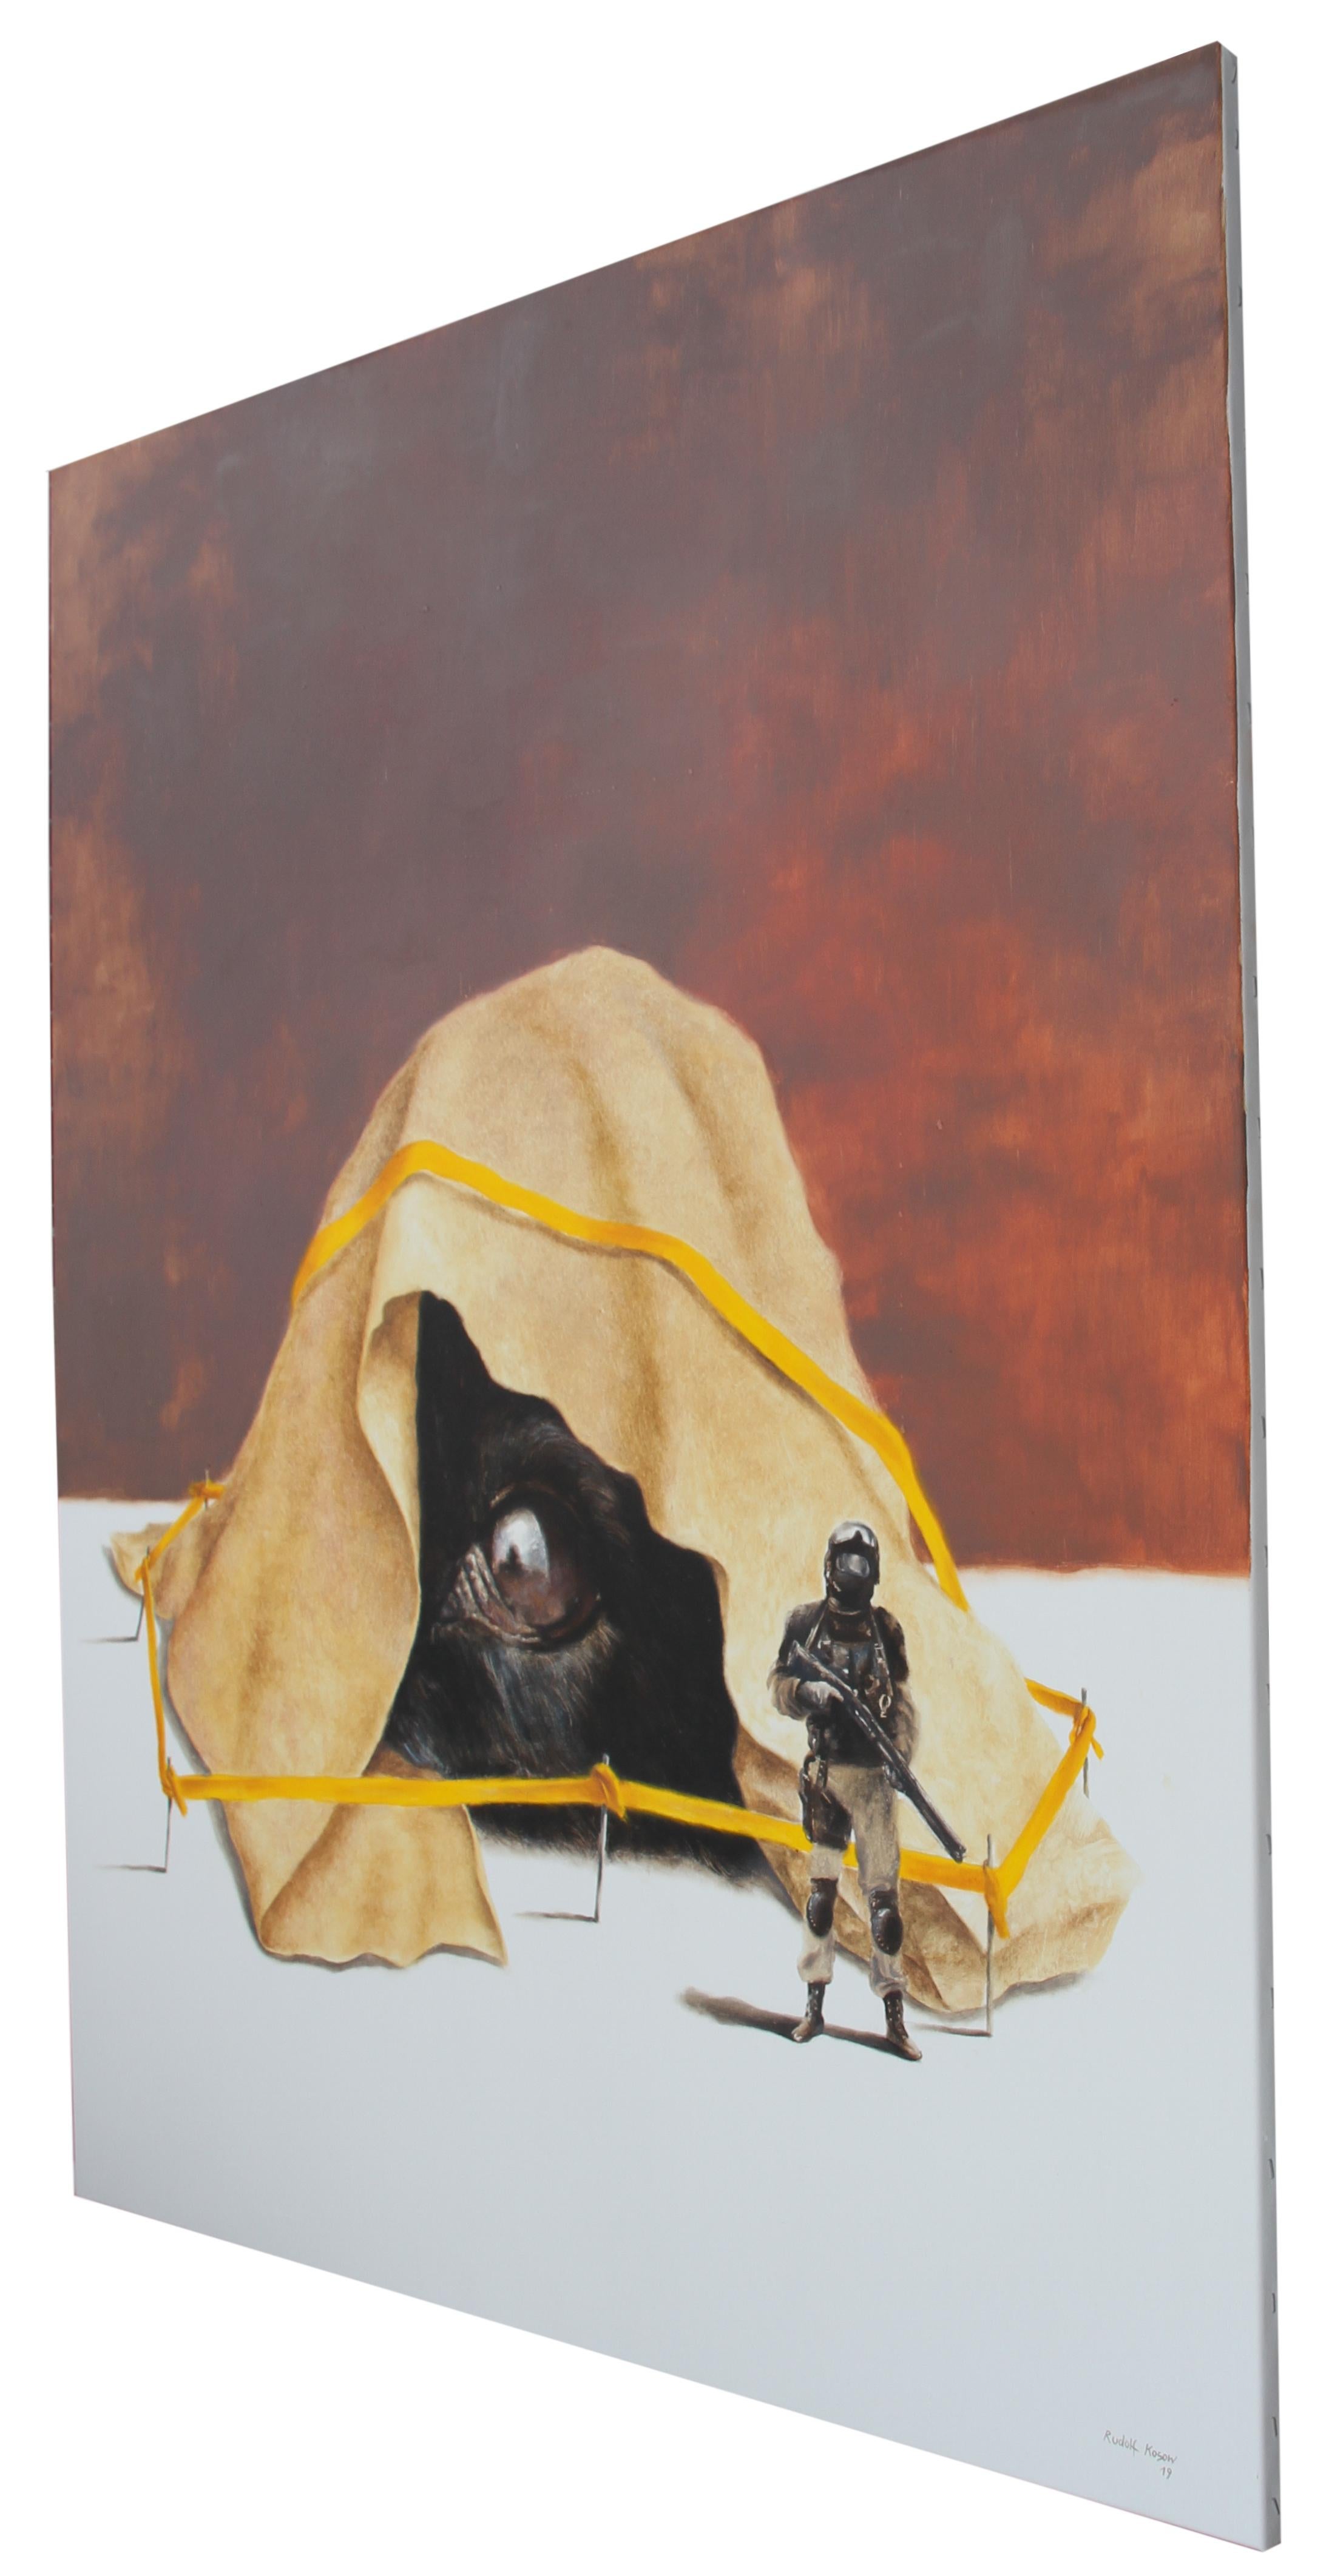 Stranger (dog soldier Cop Surrealistische Kriminalitätsssszene Ölgemälde gelbes Wandteppich) – Painting von Rudolf Kosow